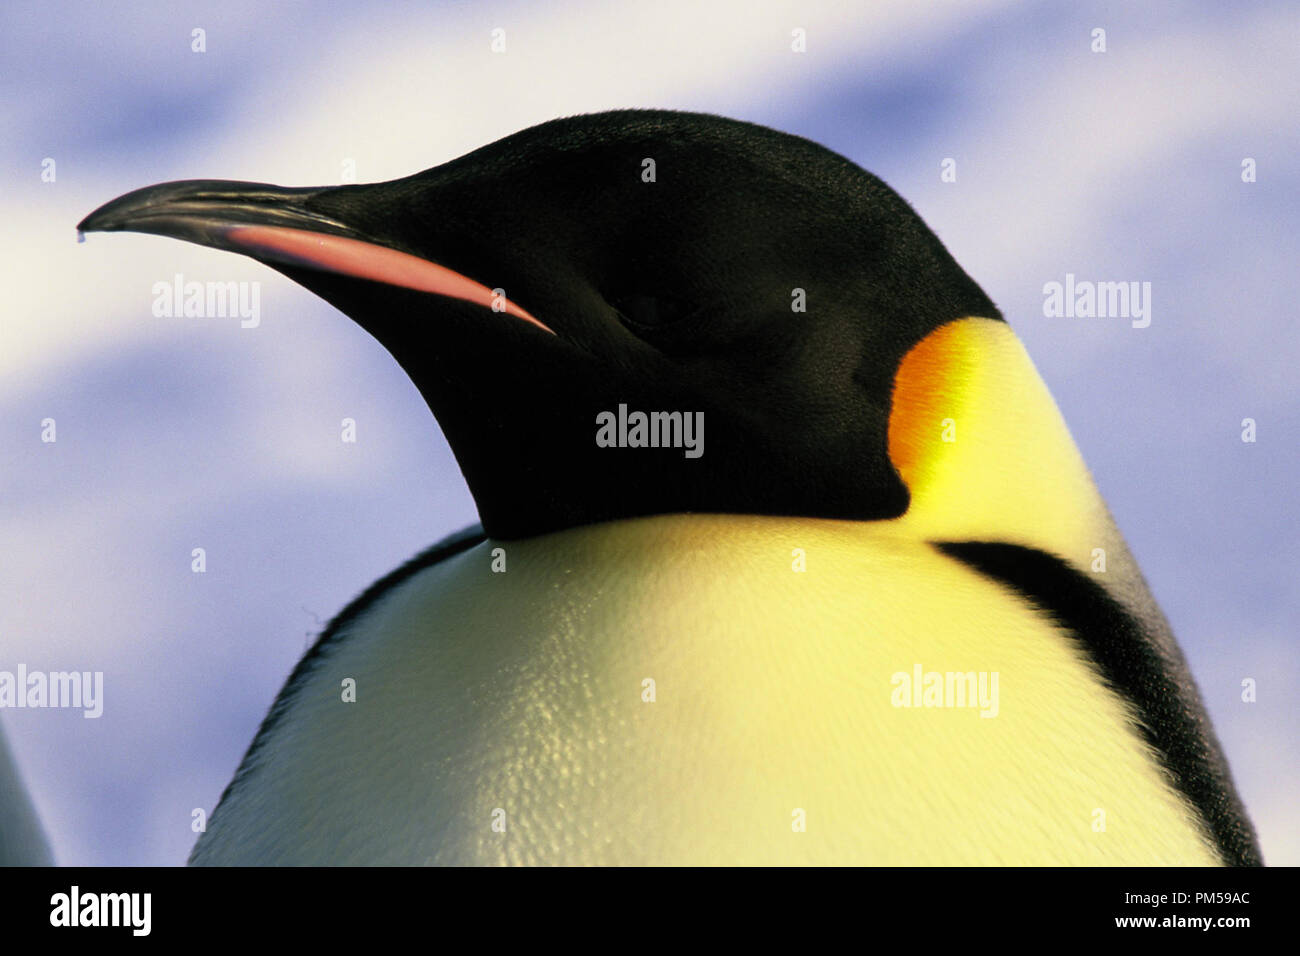 Film Still / Werbung noch von 'March der Pinguine' 2005 © 2005 National Geographic Datei Referenz # 30736224 THA nur für redaktionelle Verwendung - Alle Rechte vorbehalten Stockfoto